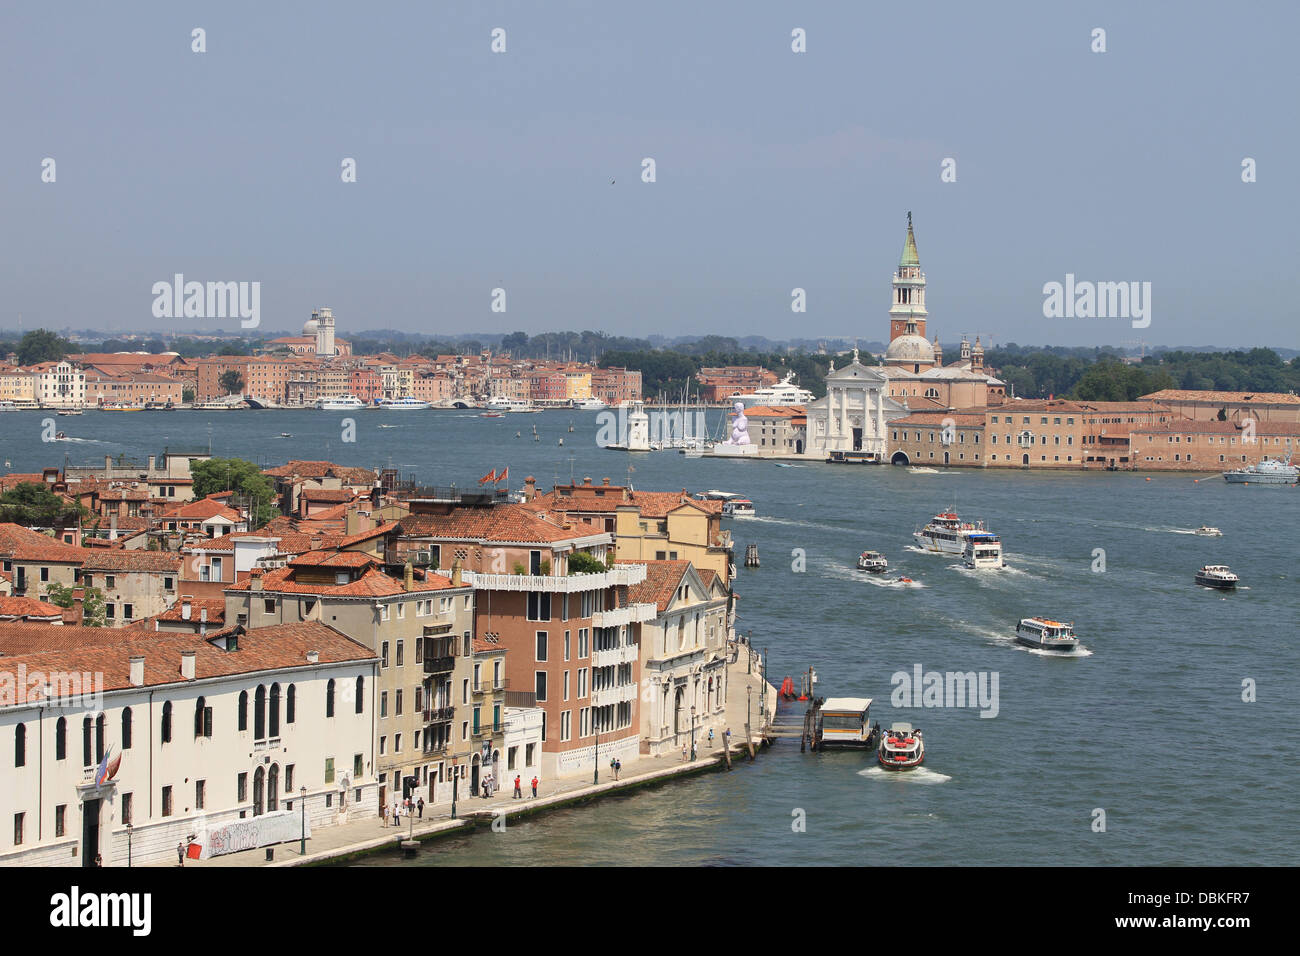 Venise en Italie, sur la photo du haut pont d'un bateau de croisière naviguant sur le Canale Grande. Banque D'Images